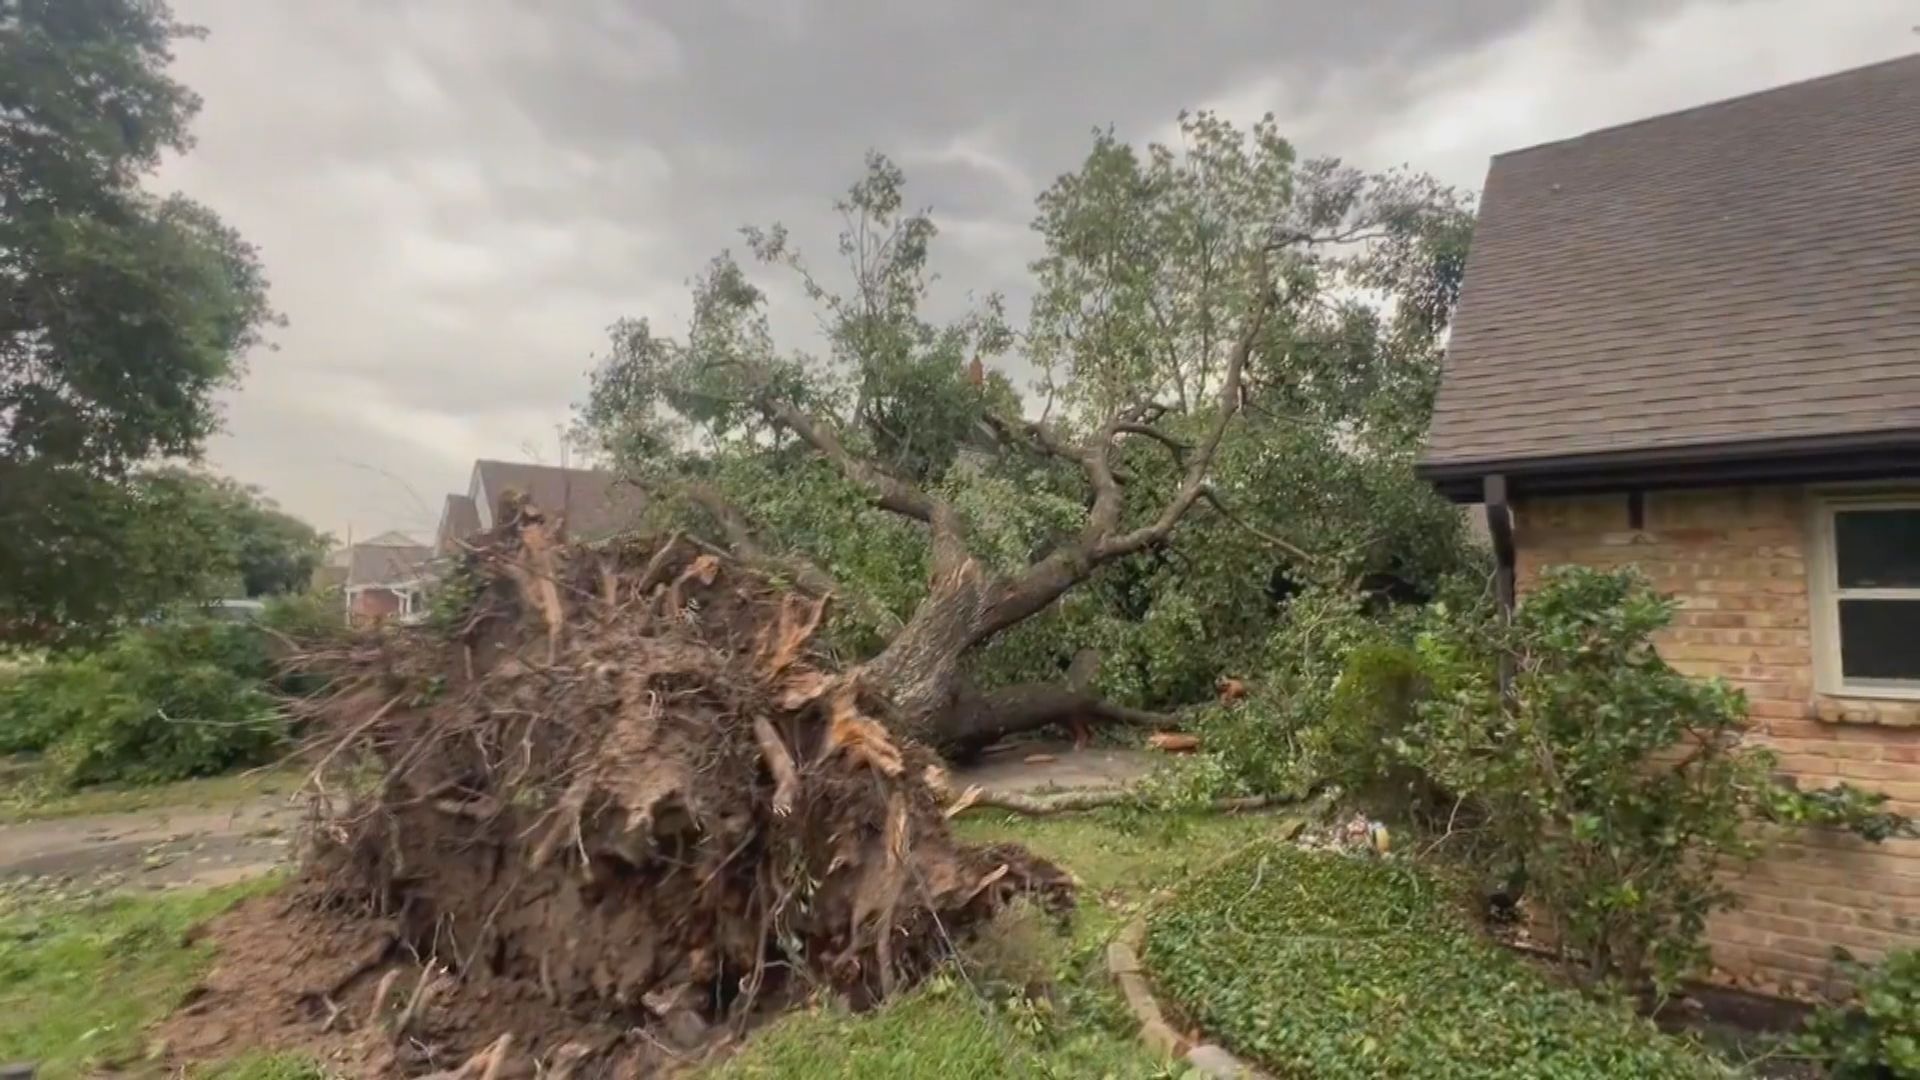 美國休斯敦遭龍捲風吹襲 最少七死 拜登發布災難聲明 動用聯邦資源救災